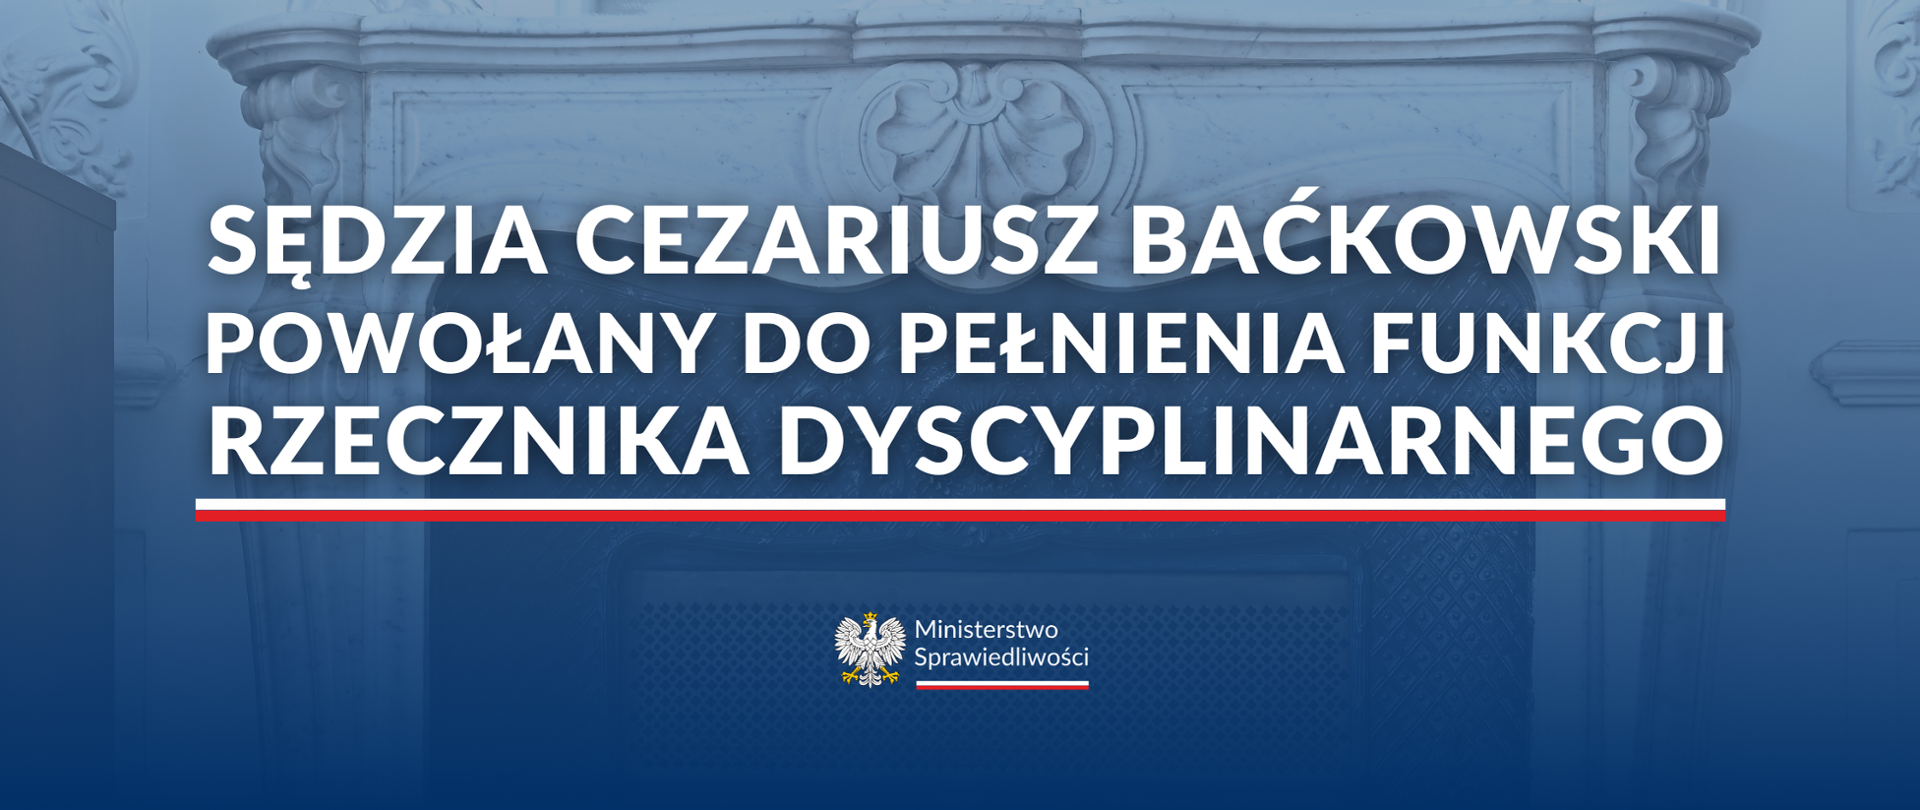 Sędzia Cezariusz Baćkowski powołany przez Ministra Sprawiedliwości Adama Bodnara do pełnienia funkcji Rzecznika Dyscyplinarnego